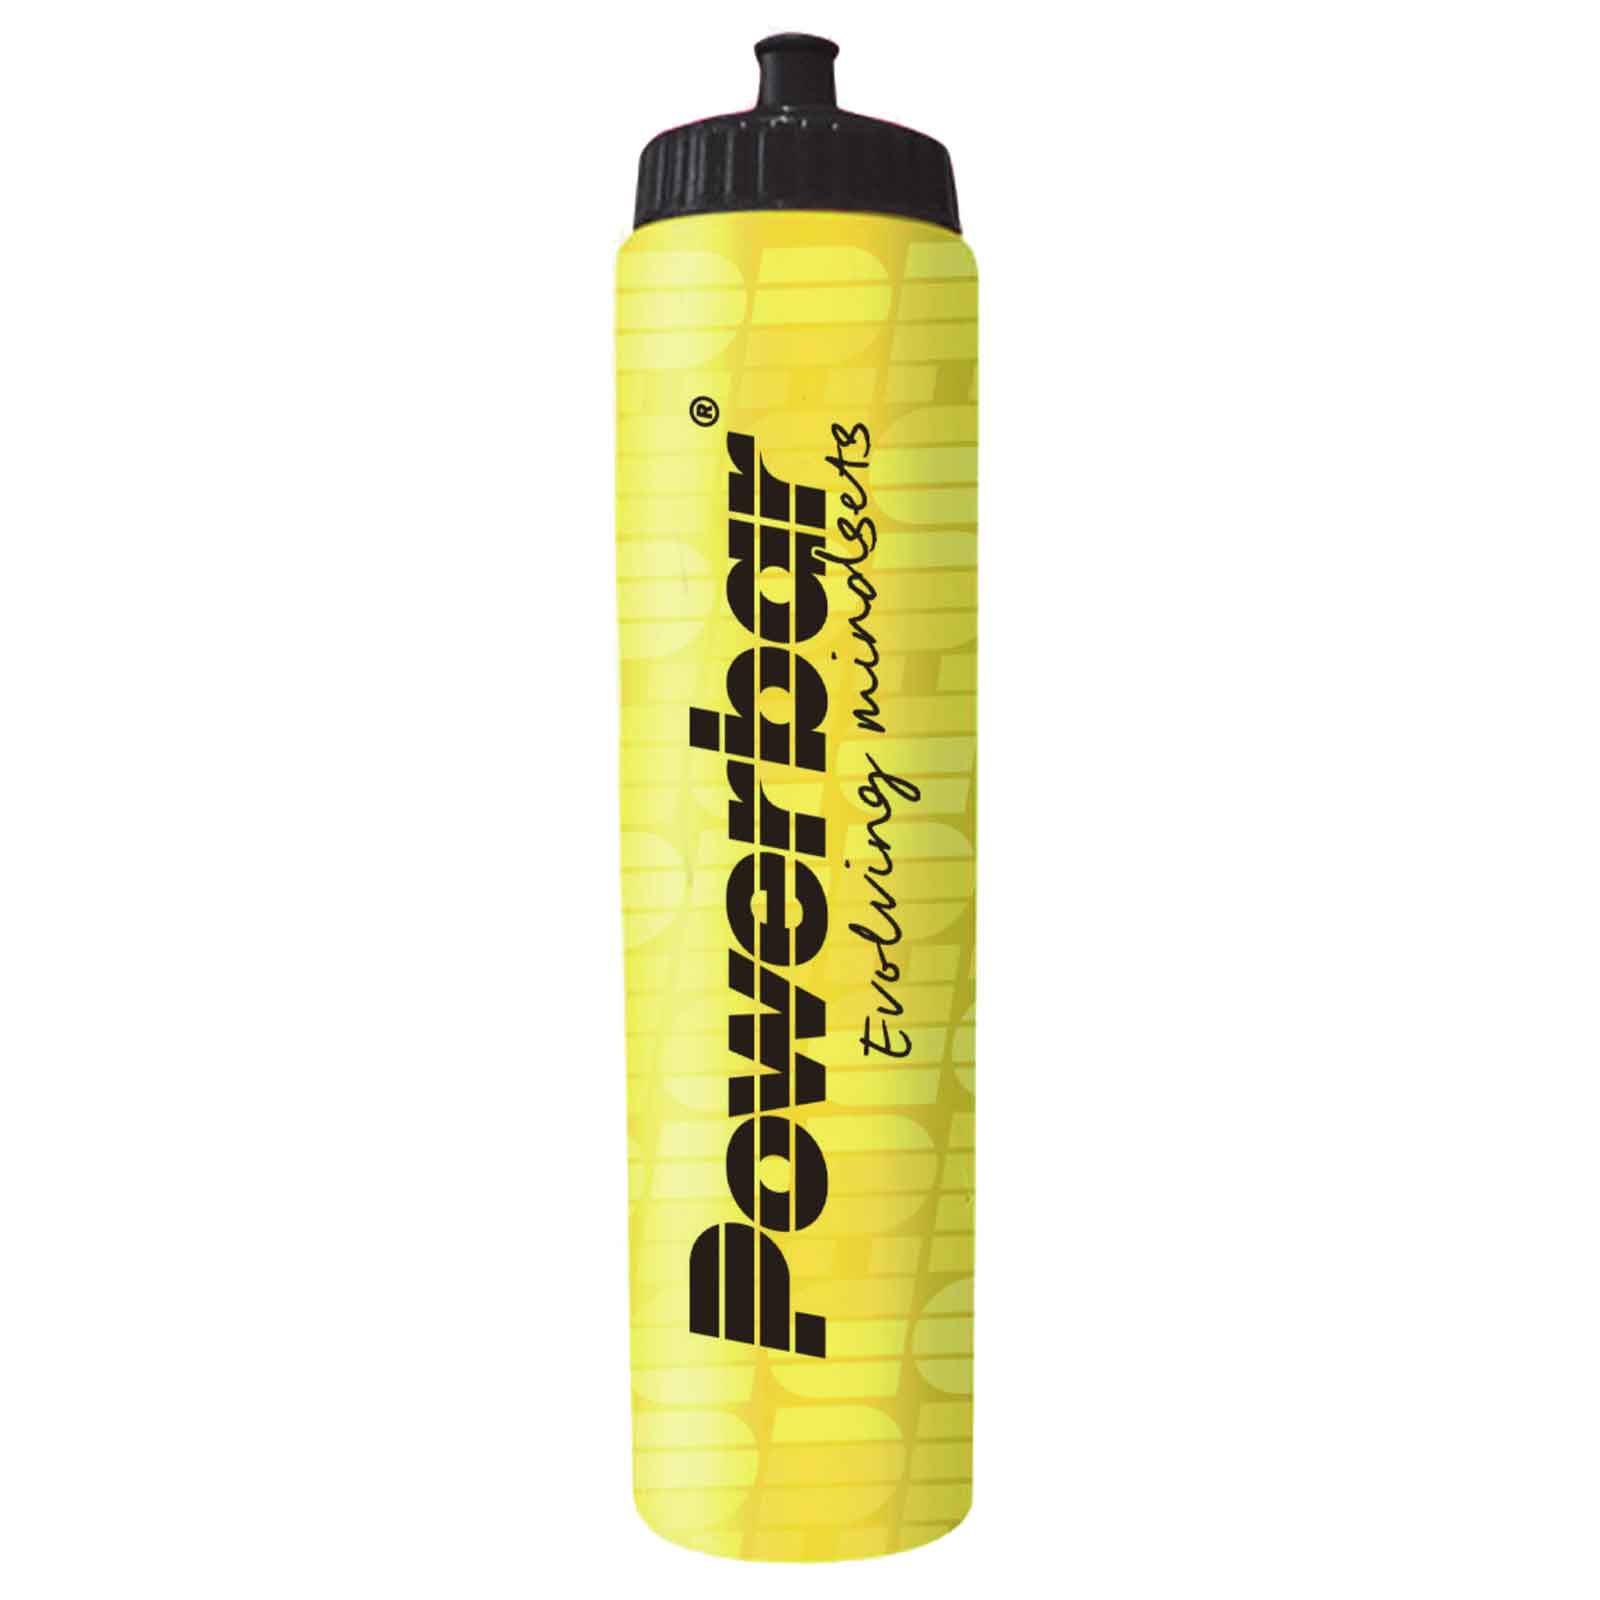 Produktbild von Powerbar Trinkflasche 1000ml - gelb